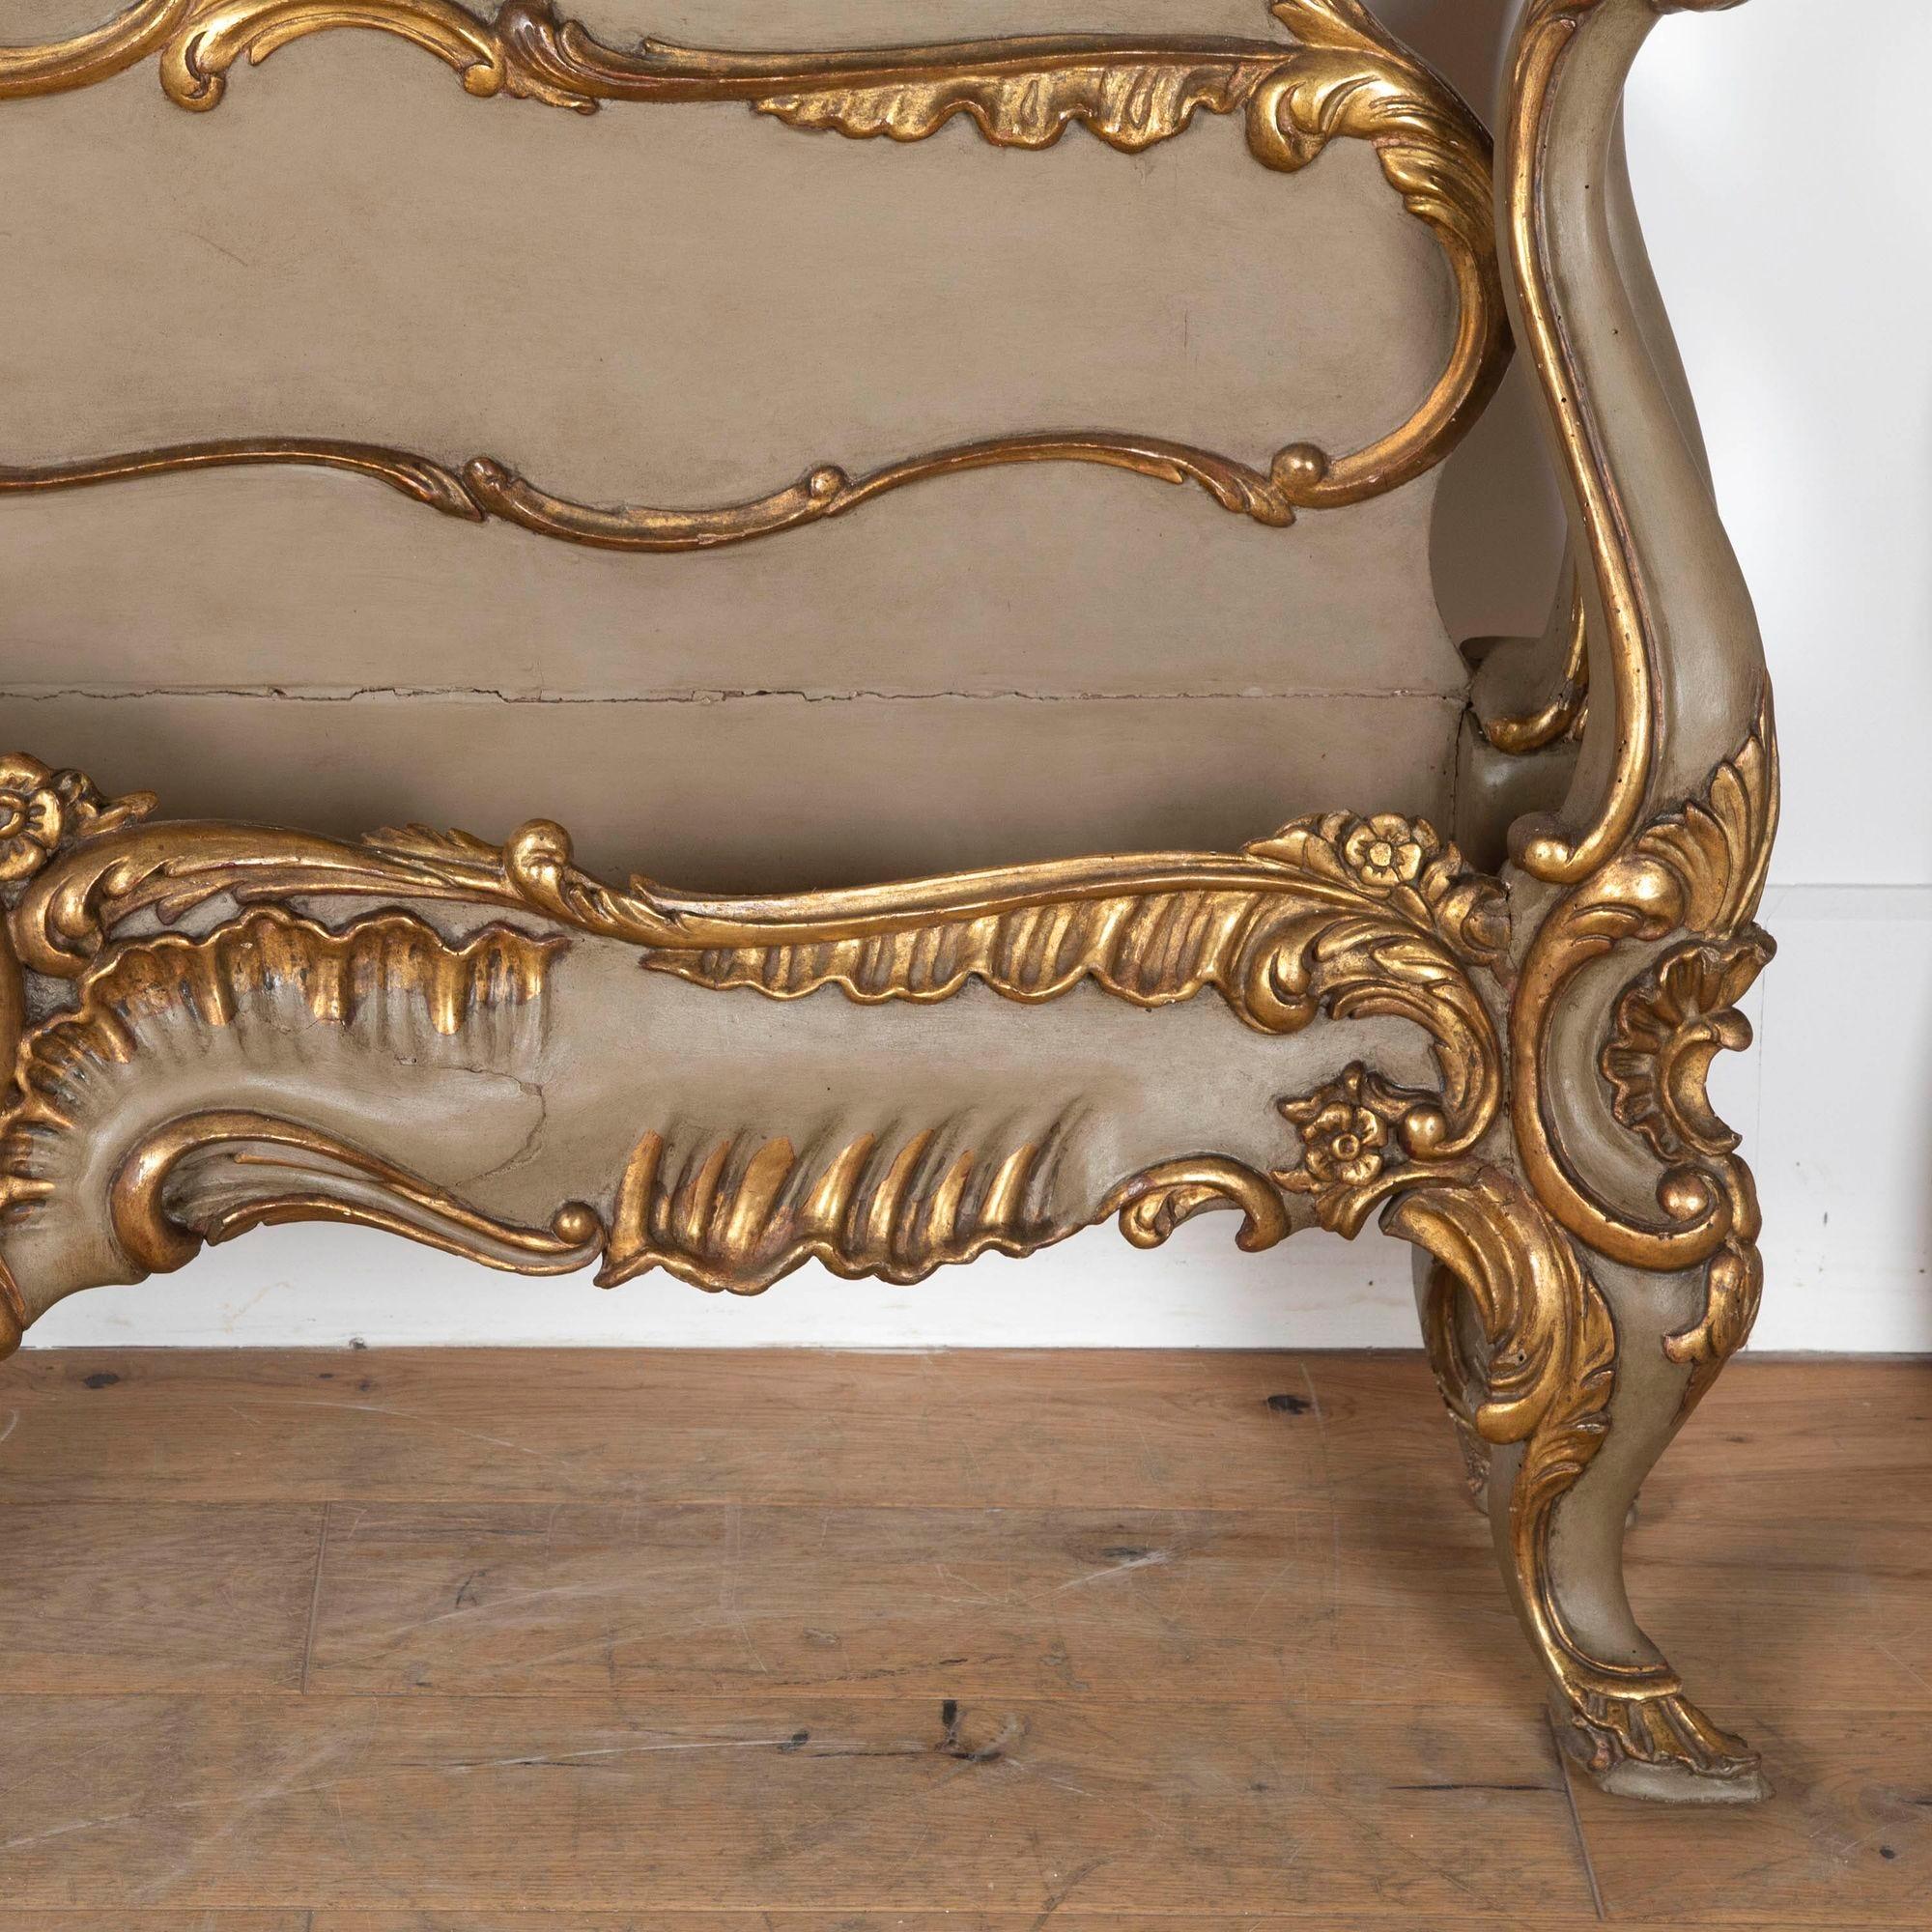 
Magnifique lit super king size en bois doré baroque Florentine du 19ème siècle.
Magnifique sculpture à la main avec dorure d'origine.
Paire d'anges sur le dessus de la tête de lit pour veiller sur vous pendant votre sommeil, avec des visages